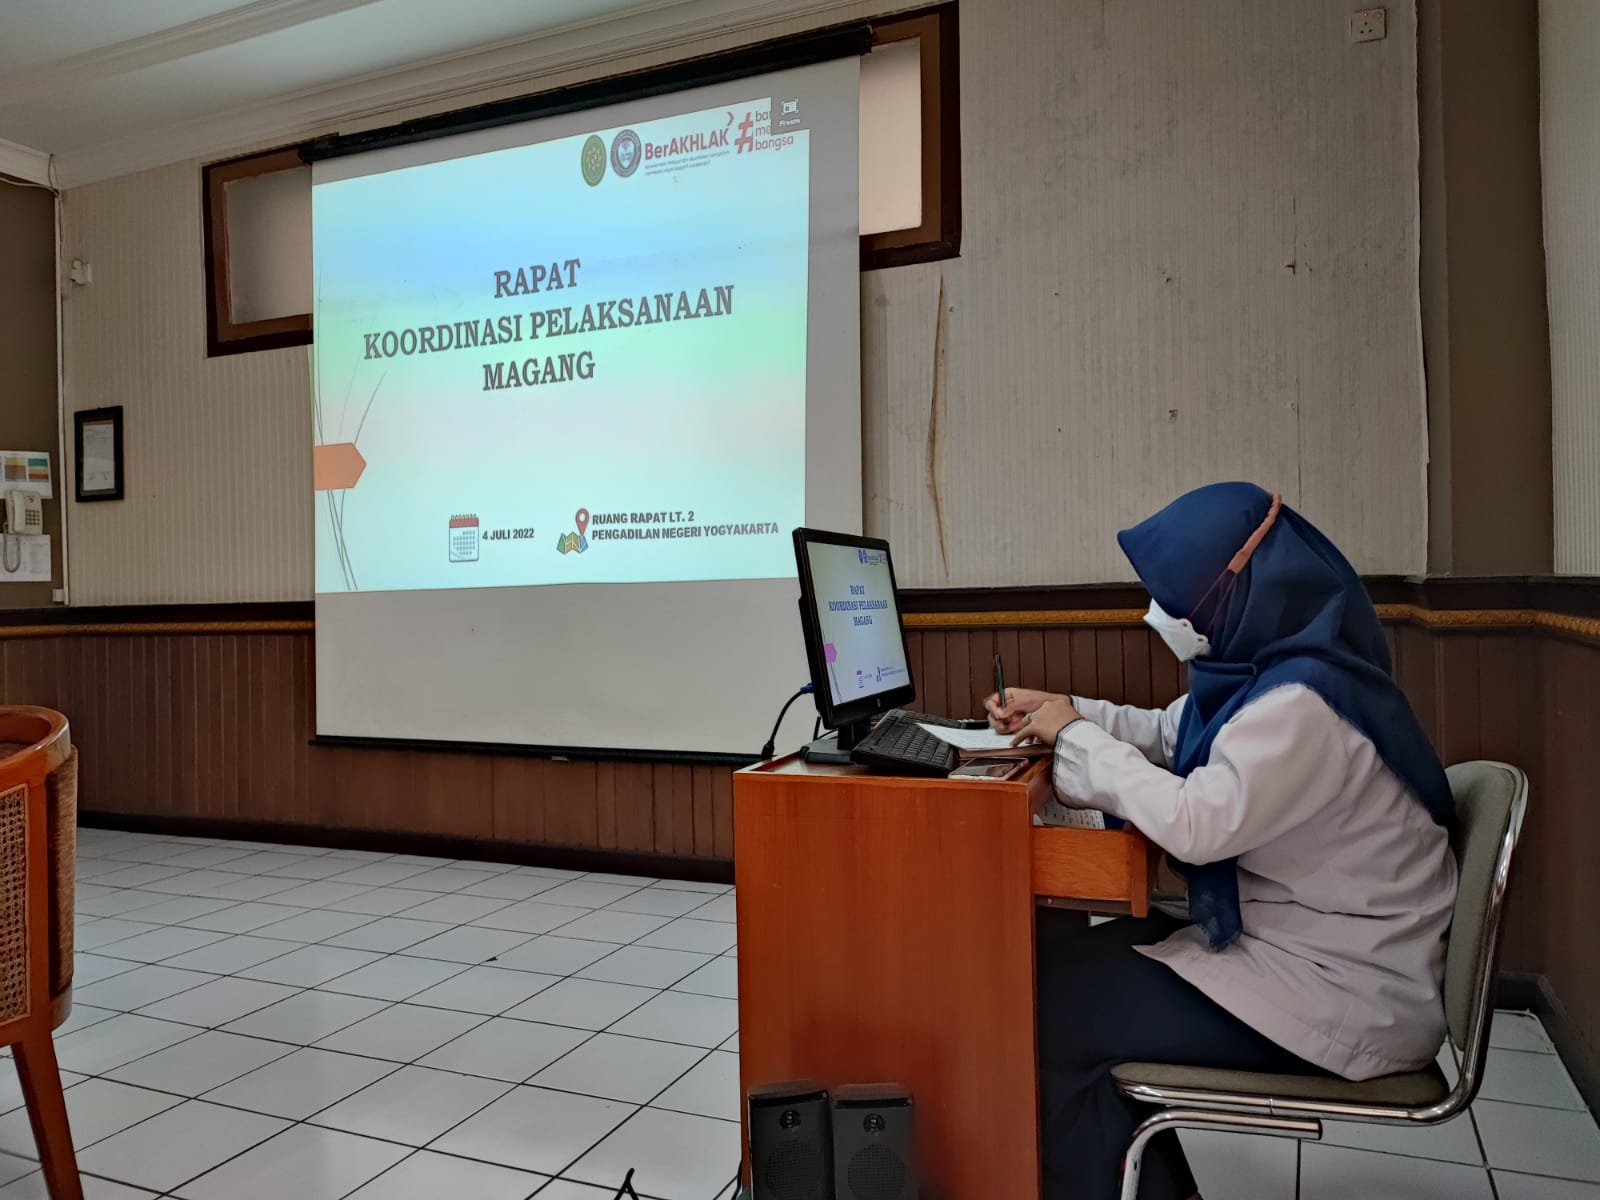 Rapat Koordinasi Pelaksanaan Magang di Pengadilan Negeri Yogyakarta